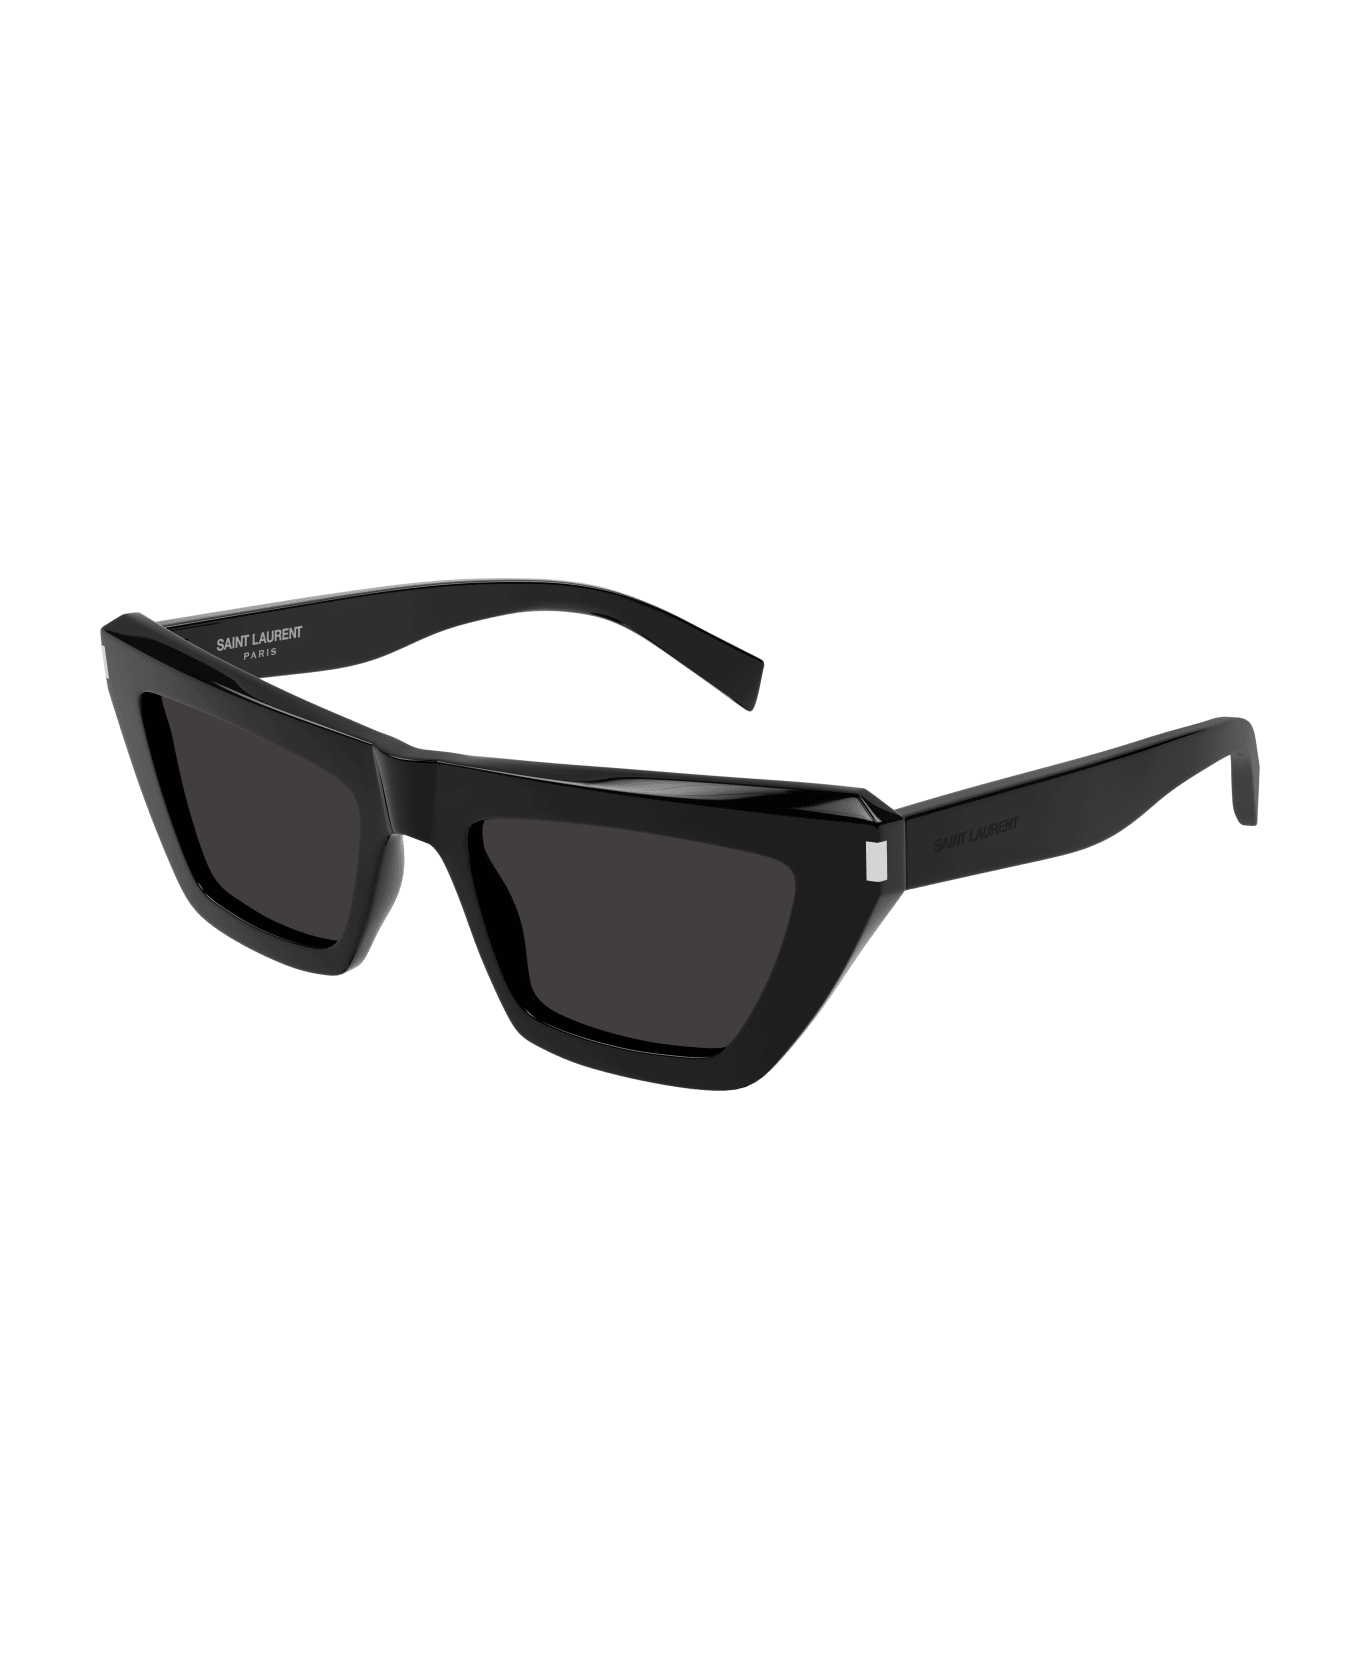 Saint Laurent Eyewear Sl 467 Sunglasses - 001 black black black